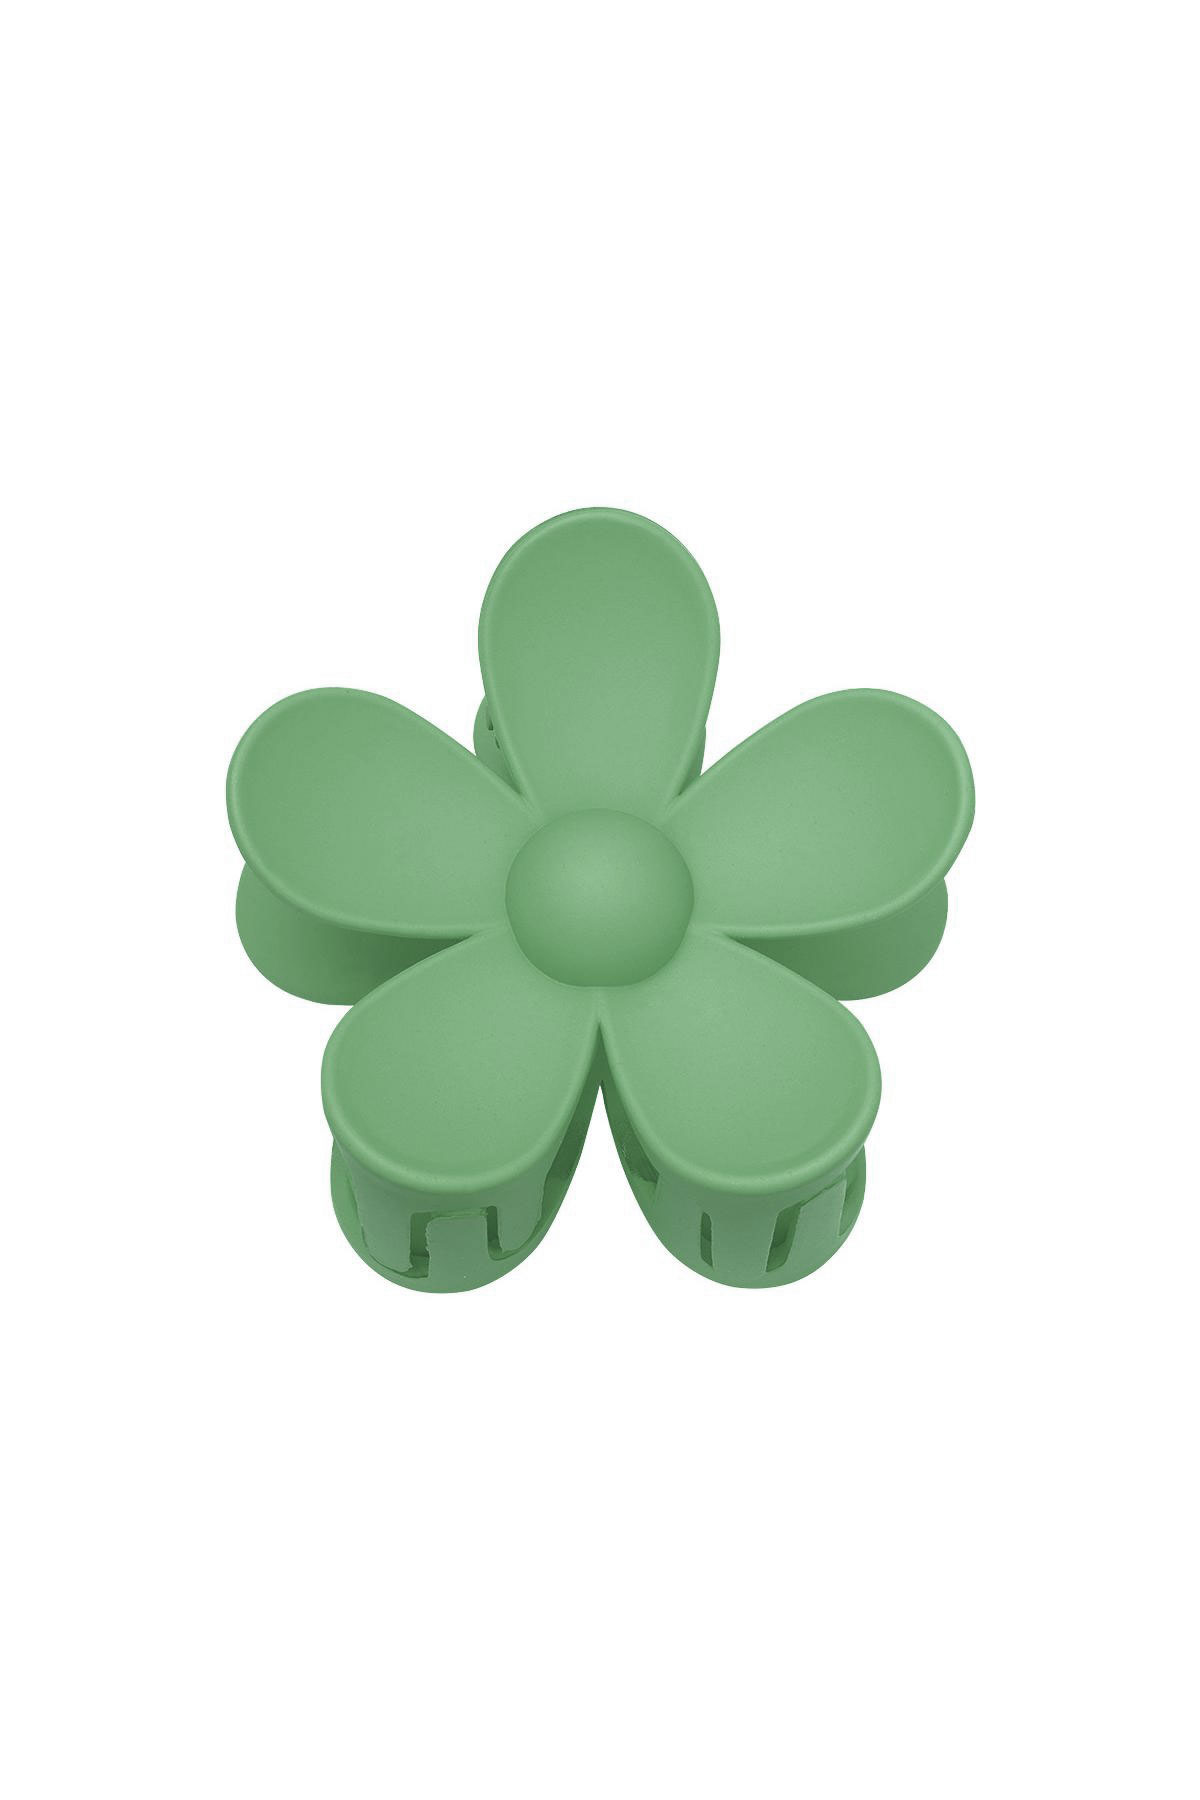 Düz renkli mat papatya çiçeği saç tokası - Yeşil Reçine h5 